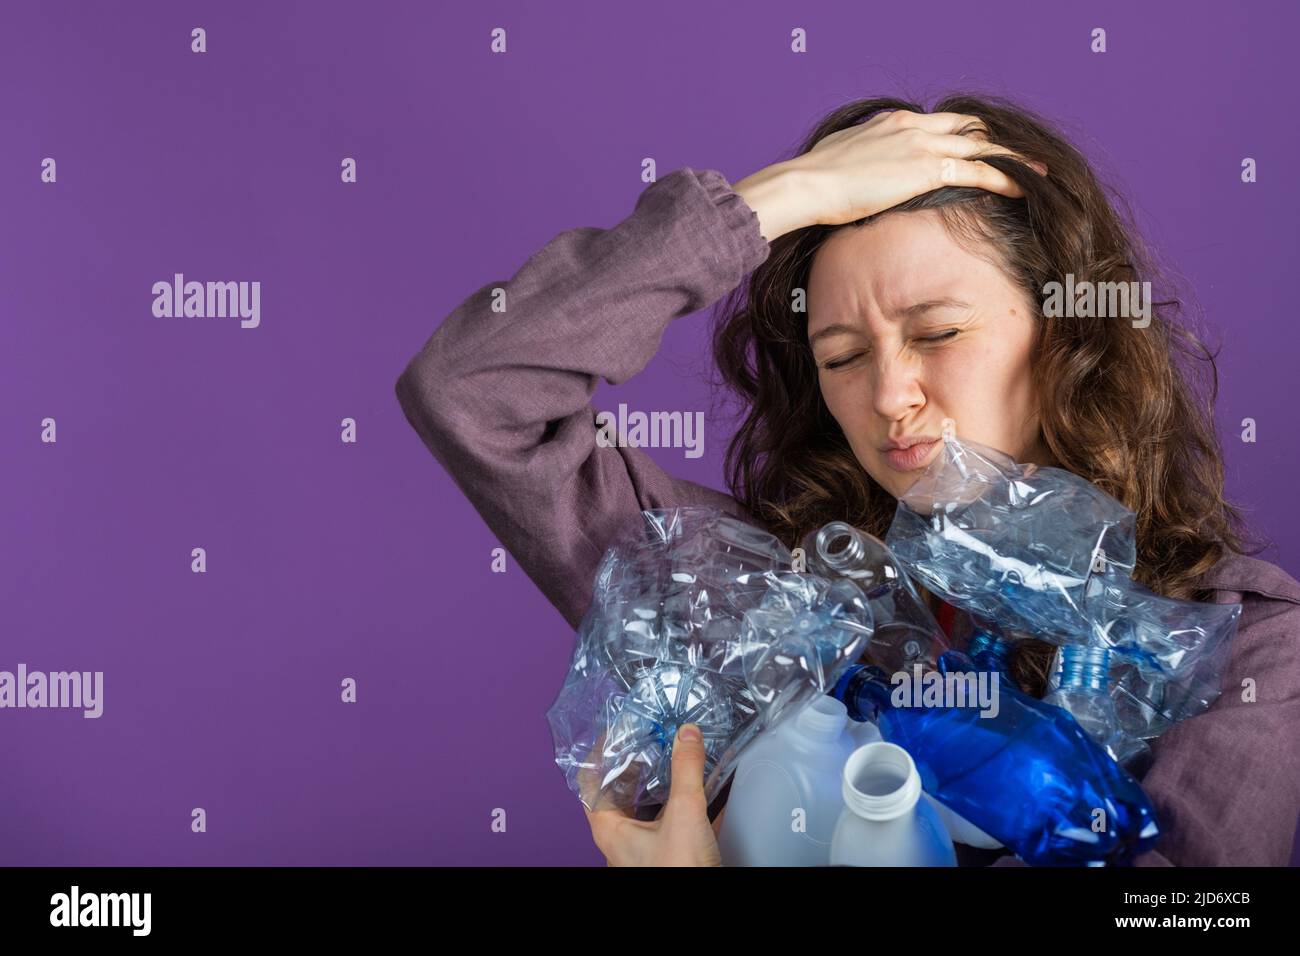 Retrato de una mujer sosteniendo un manojo de botellas de plástico en su mano y sosteniendo su cabeza con la otra mano sobre un fondo púrpura, clasificando y reciclando plástico, cuidando el medio ambiente Foto de stock